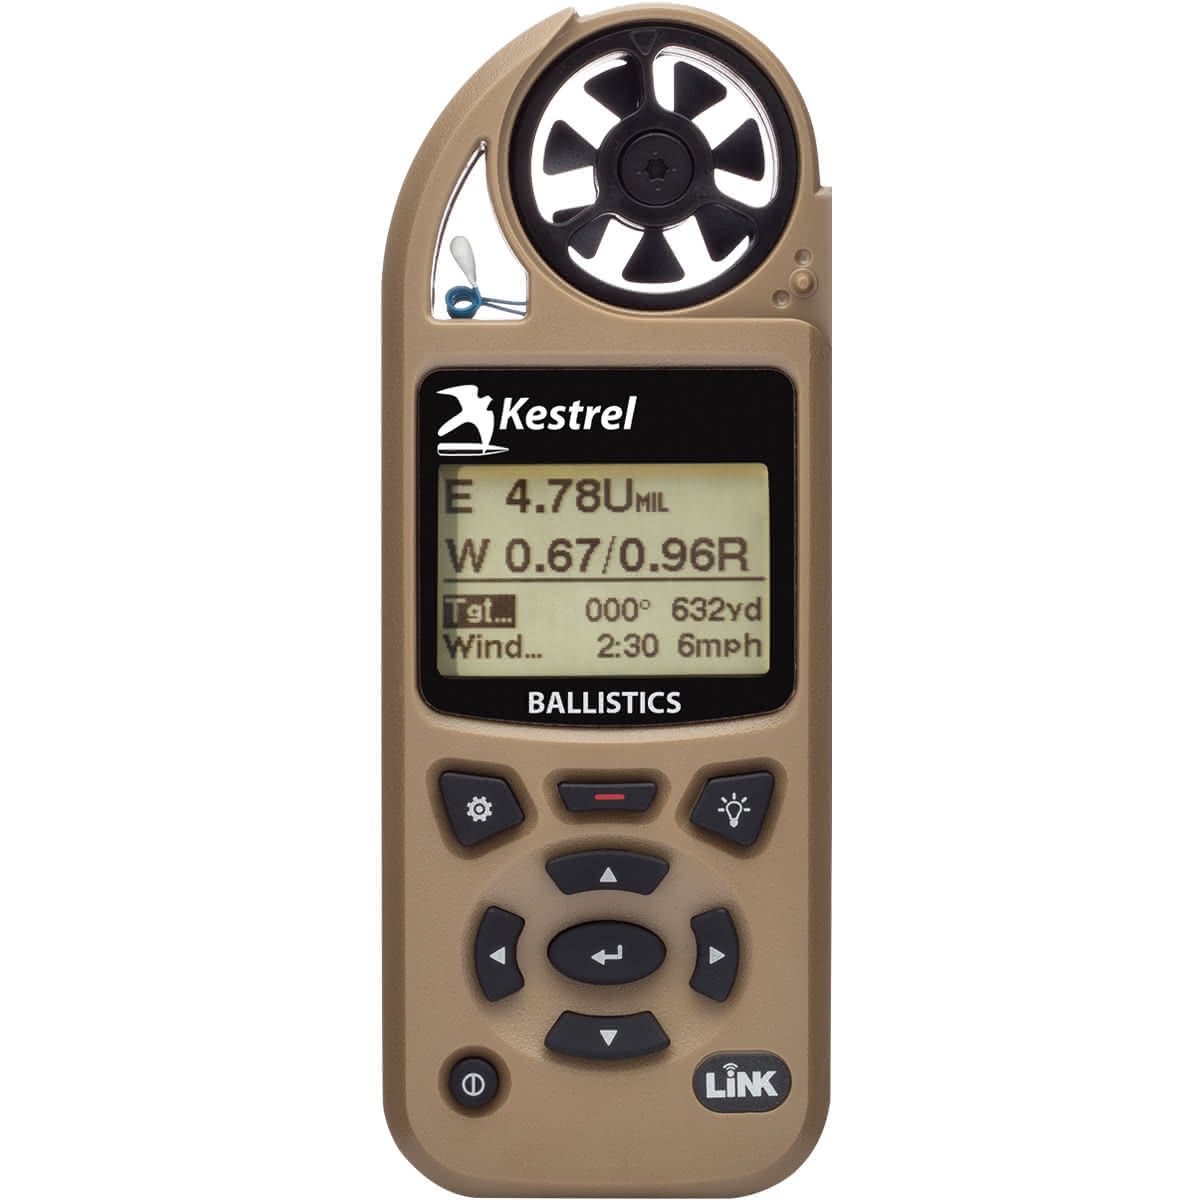 brown Kestrel handheld ballistics weather meter